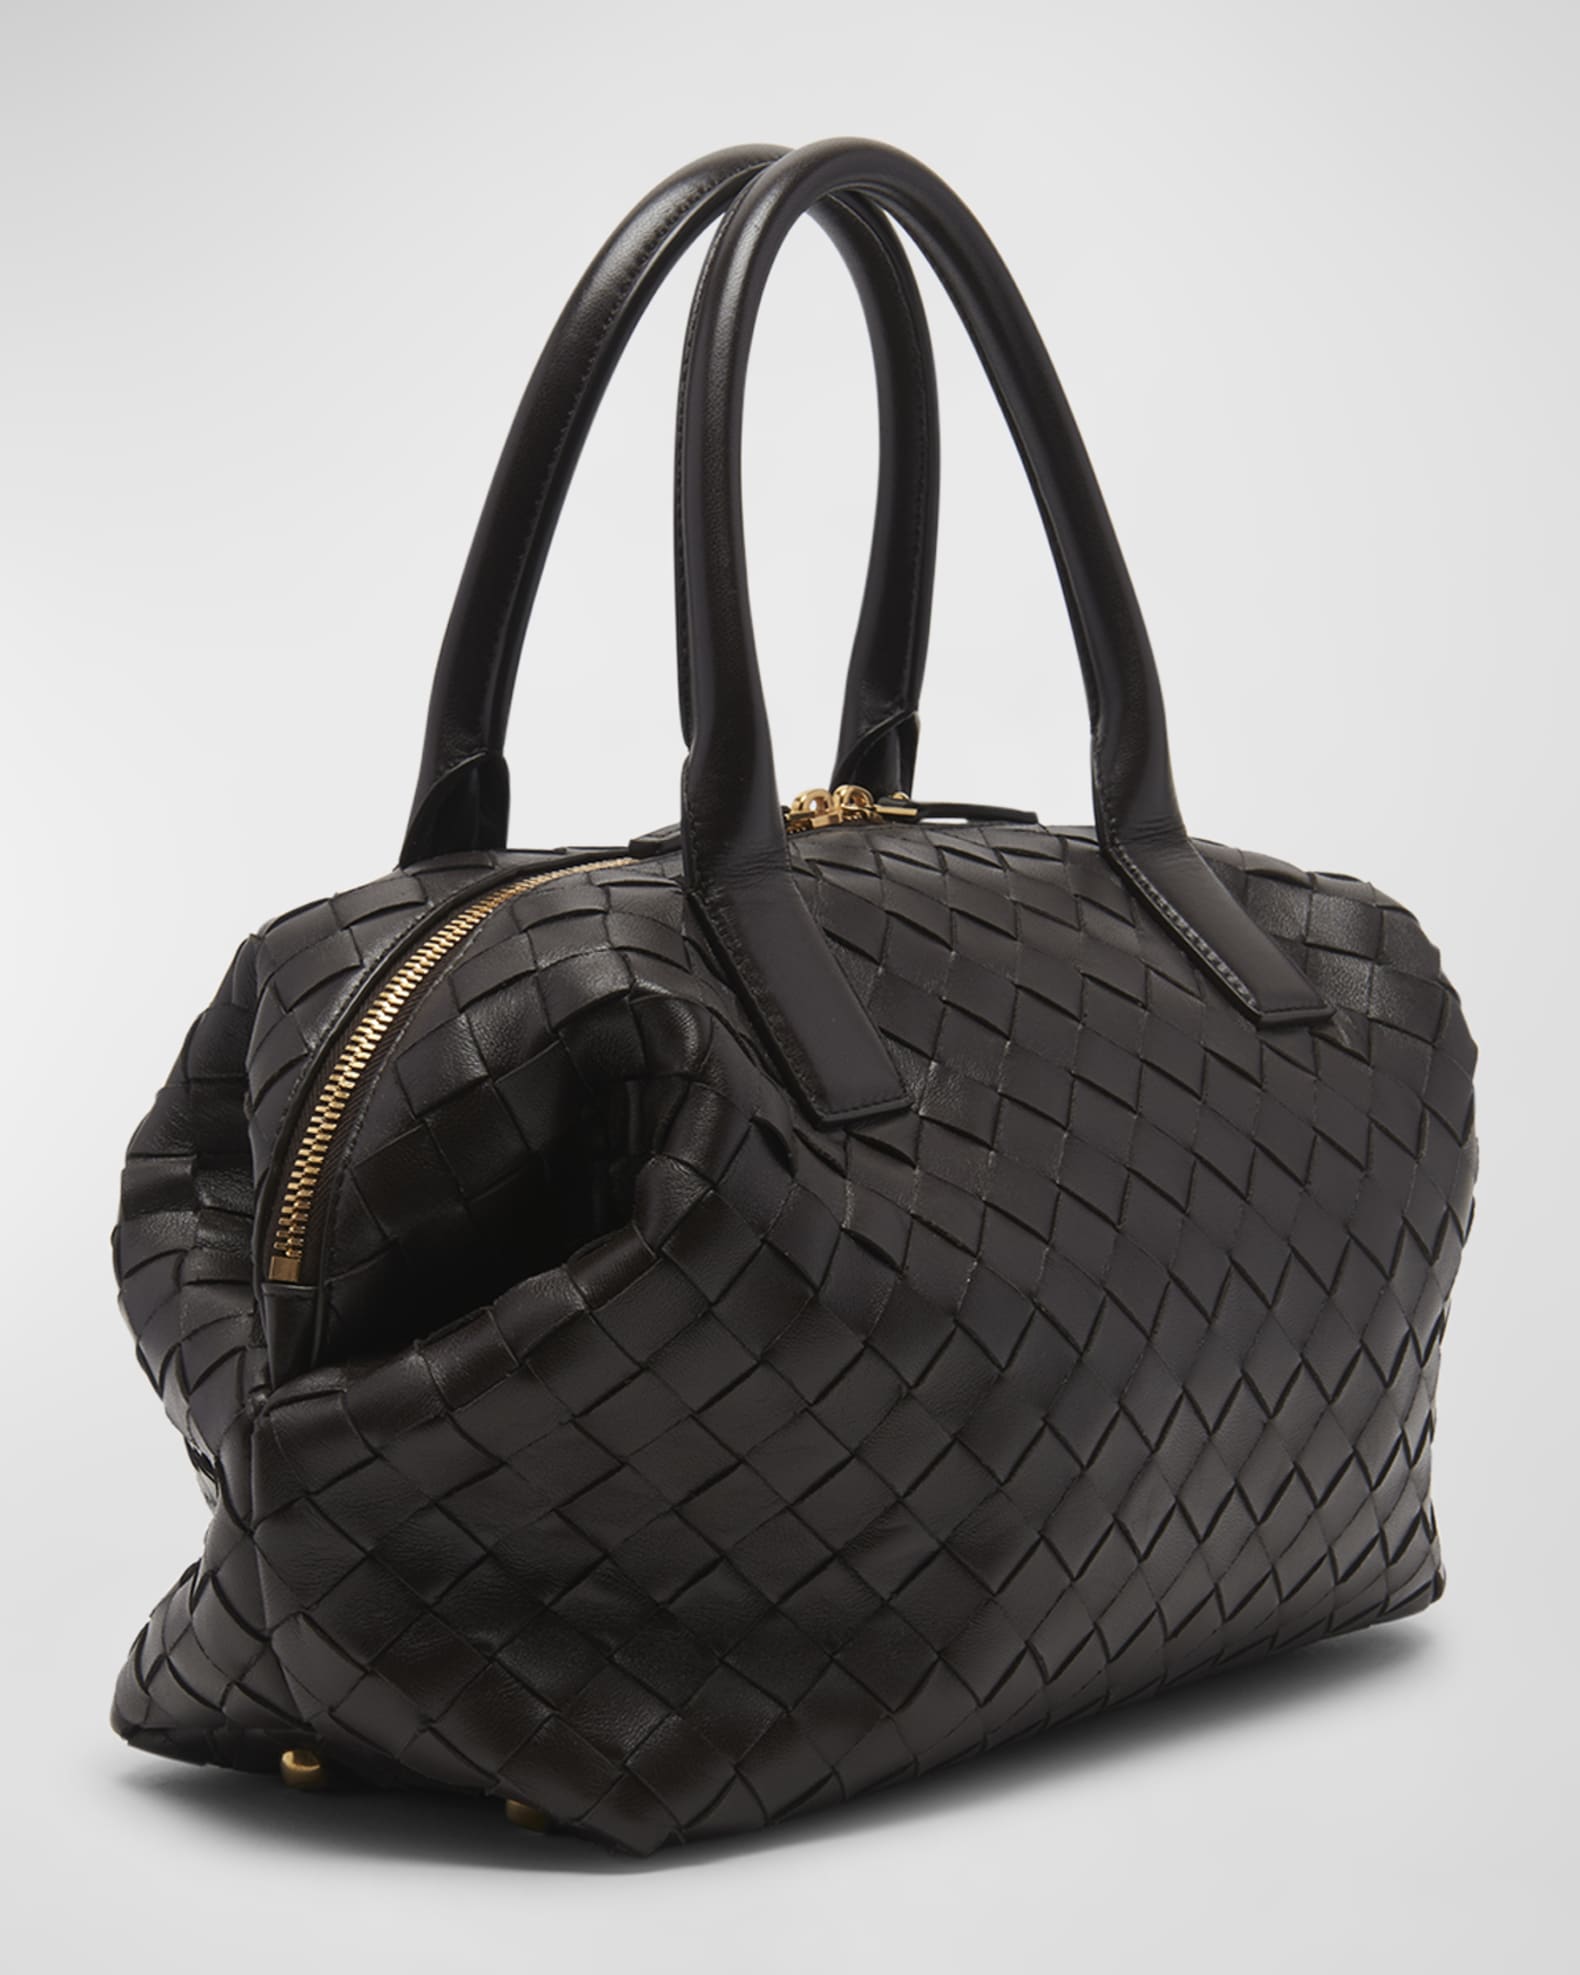 Bottega Veneta Women's Mini Bauletto - Yellow - Top Handle Bags